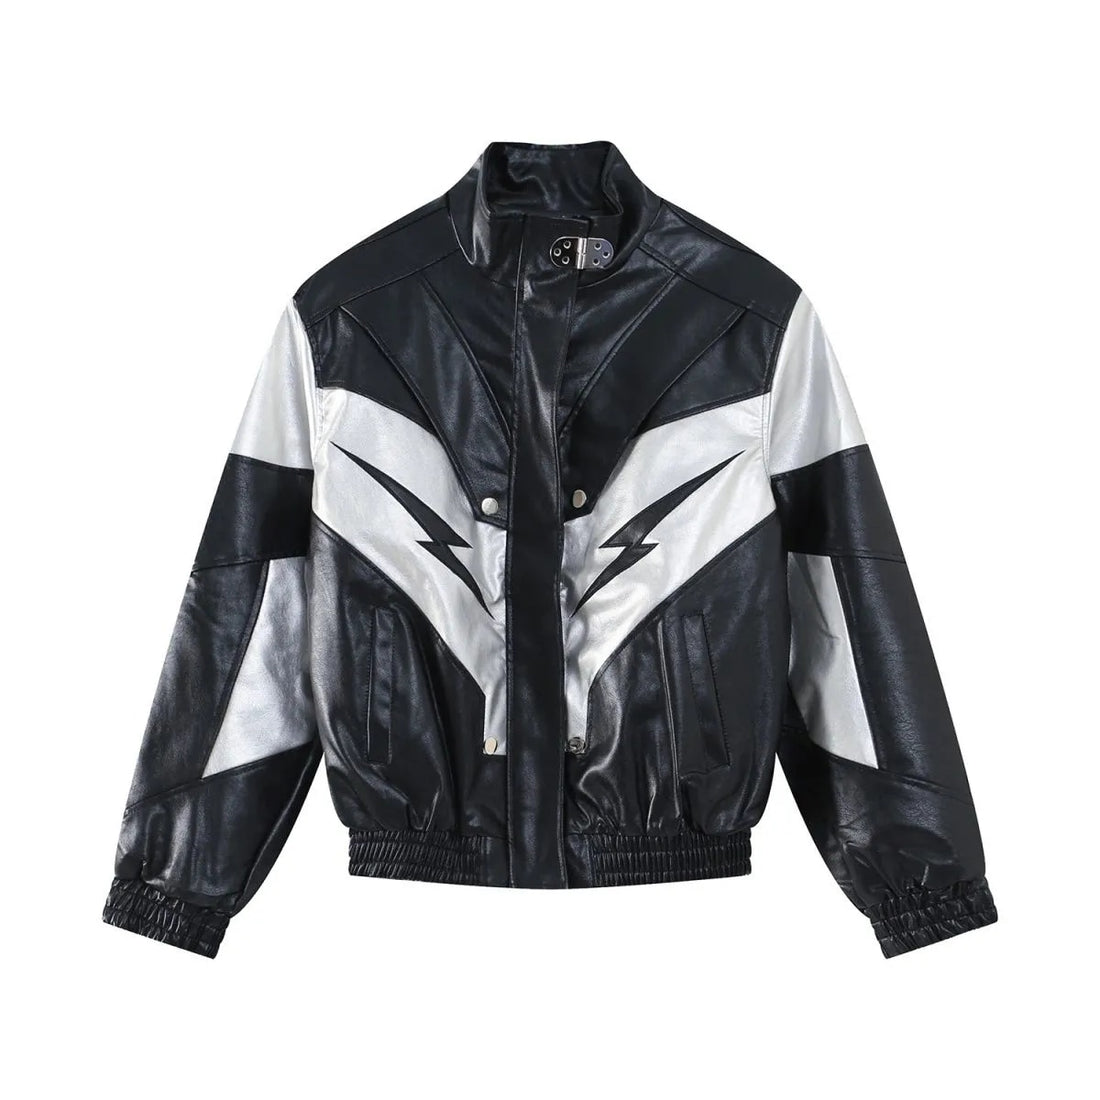 2KWRLD™ Leather Jacket - 2K WRLD